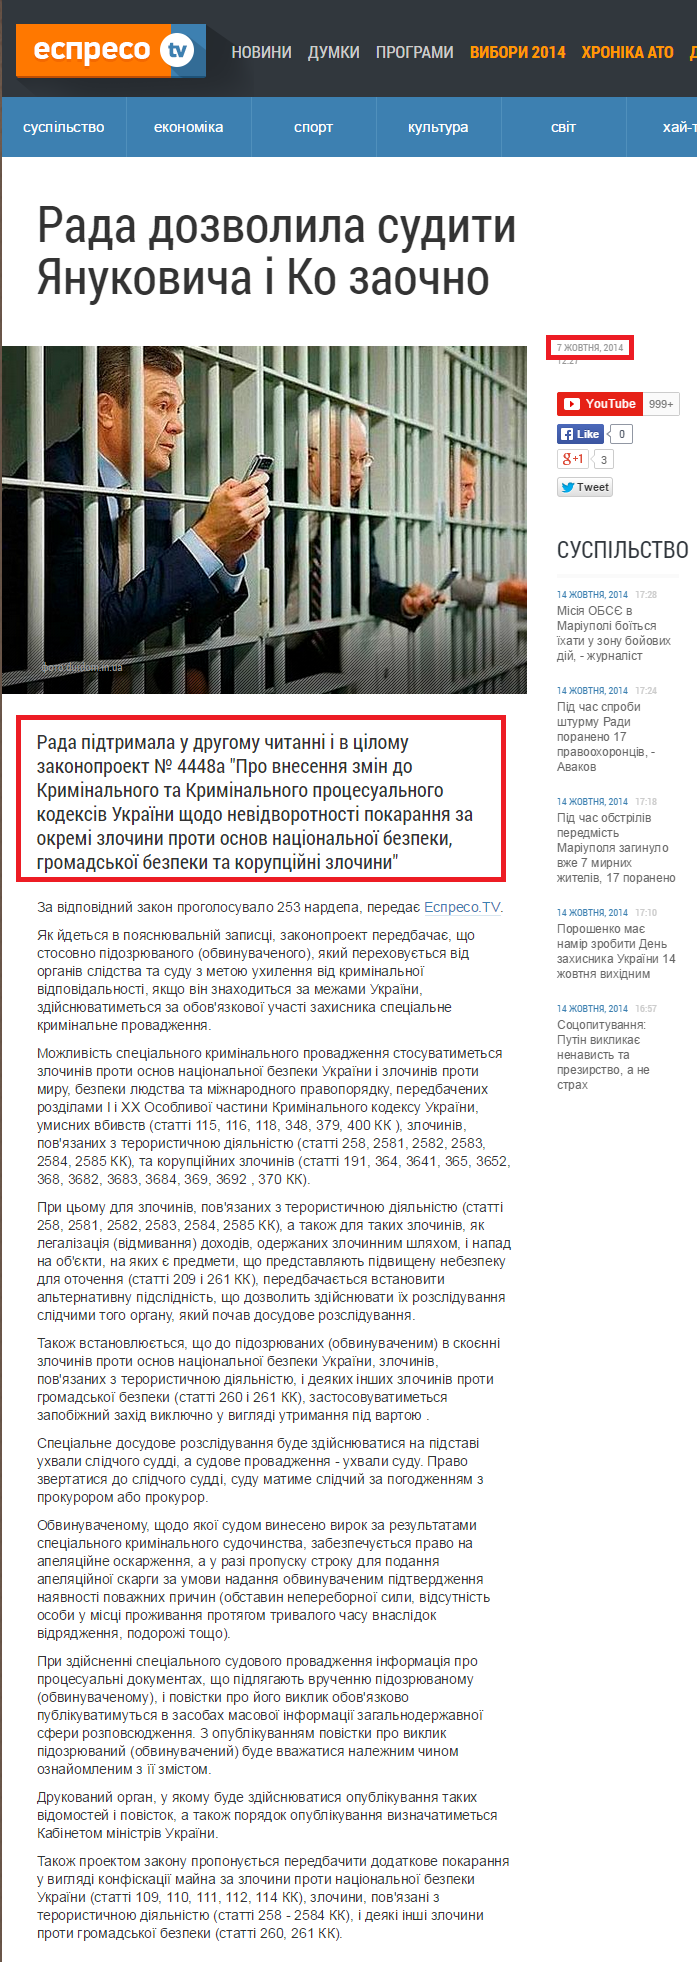 http://espreso.tv/news/2014/10/07/rada_dozvolyla_sudyty_yanukovycha_i_ko_zaochno